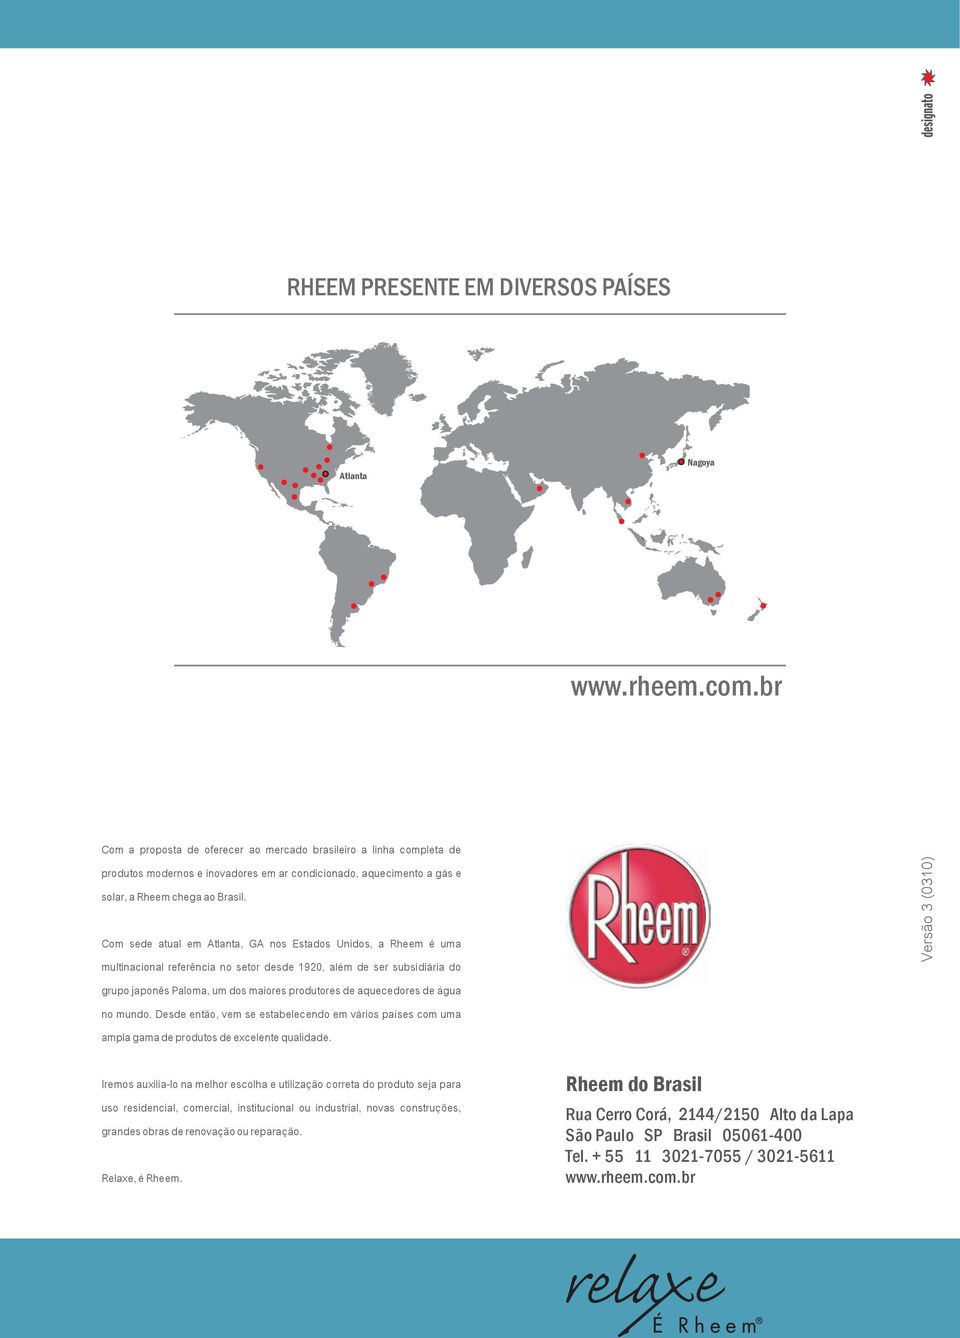 Com sede atual em Atlanta, GA nos Estados Unidos, a Rheem é uma multinacional referência no setor desde 920, além de ser subsidiária do rupo japonês Paloma, um dos maiores produtores de aquecedores